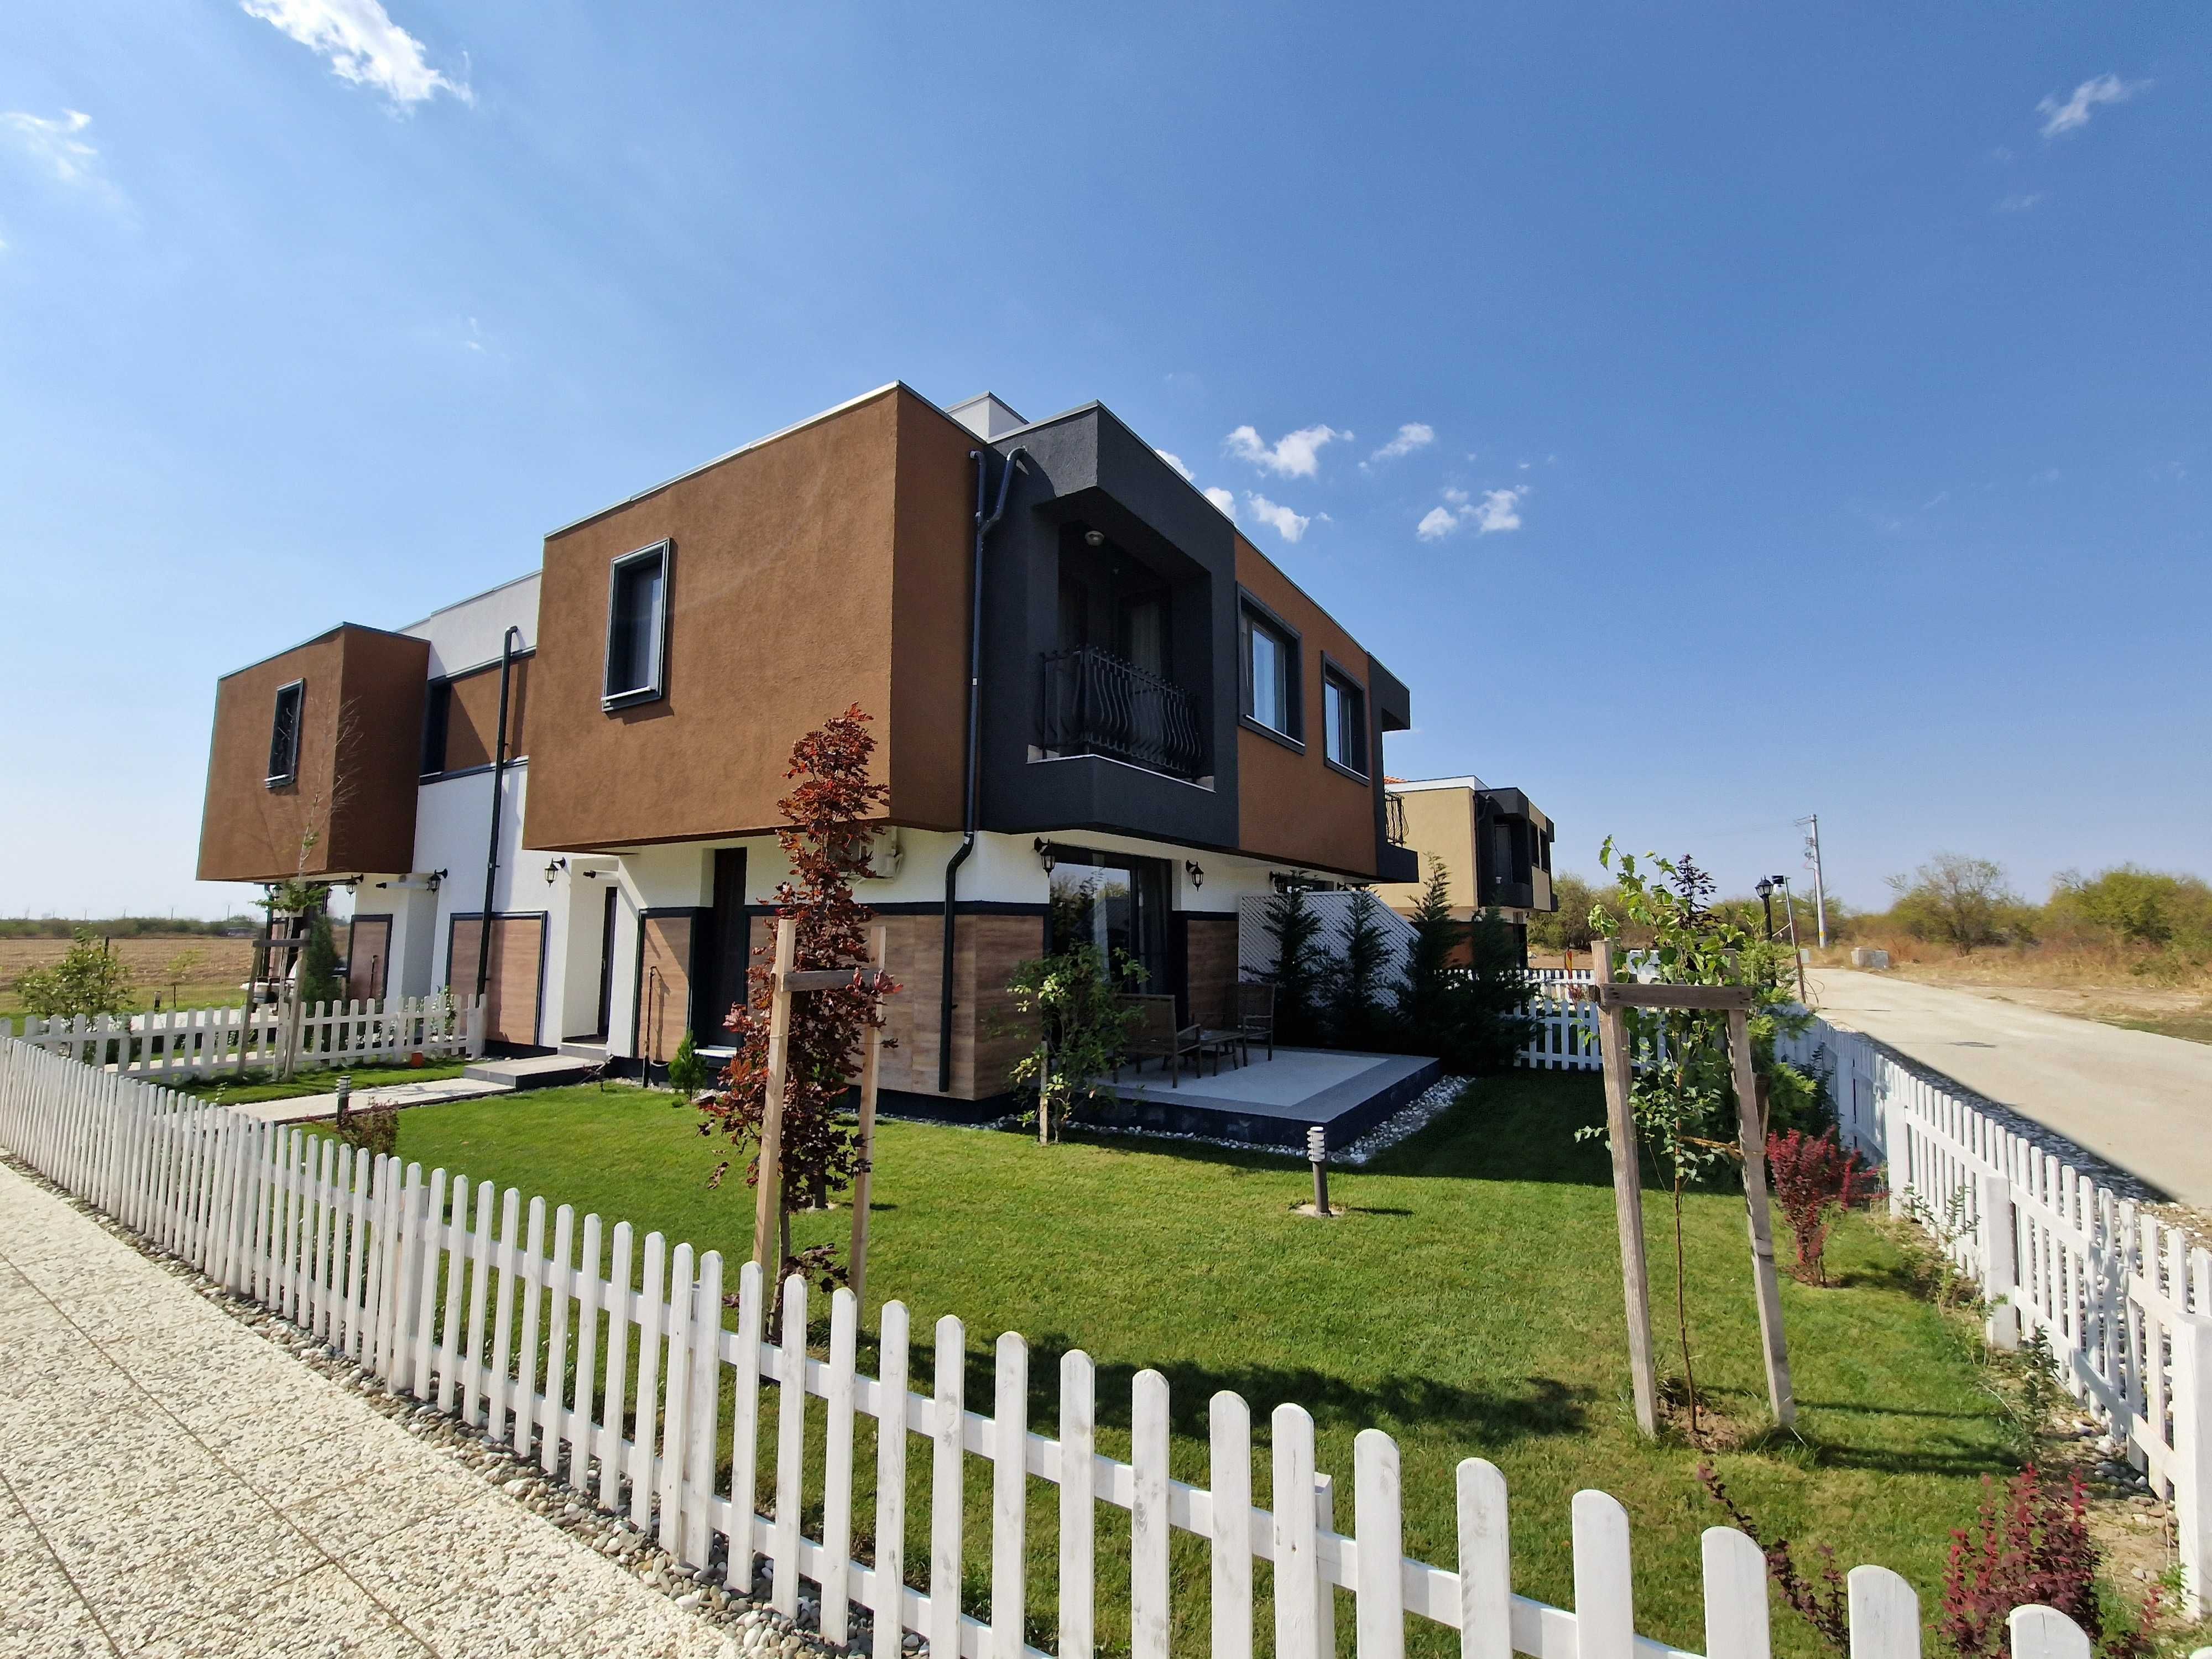 Case de Vânzare - Snagov Plaza Houses: Linişte şi Natură, Acces Uşor